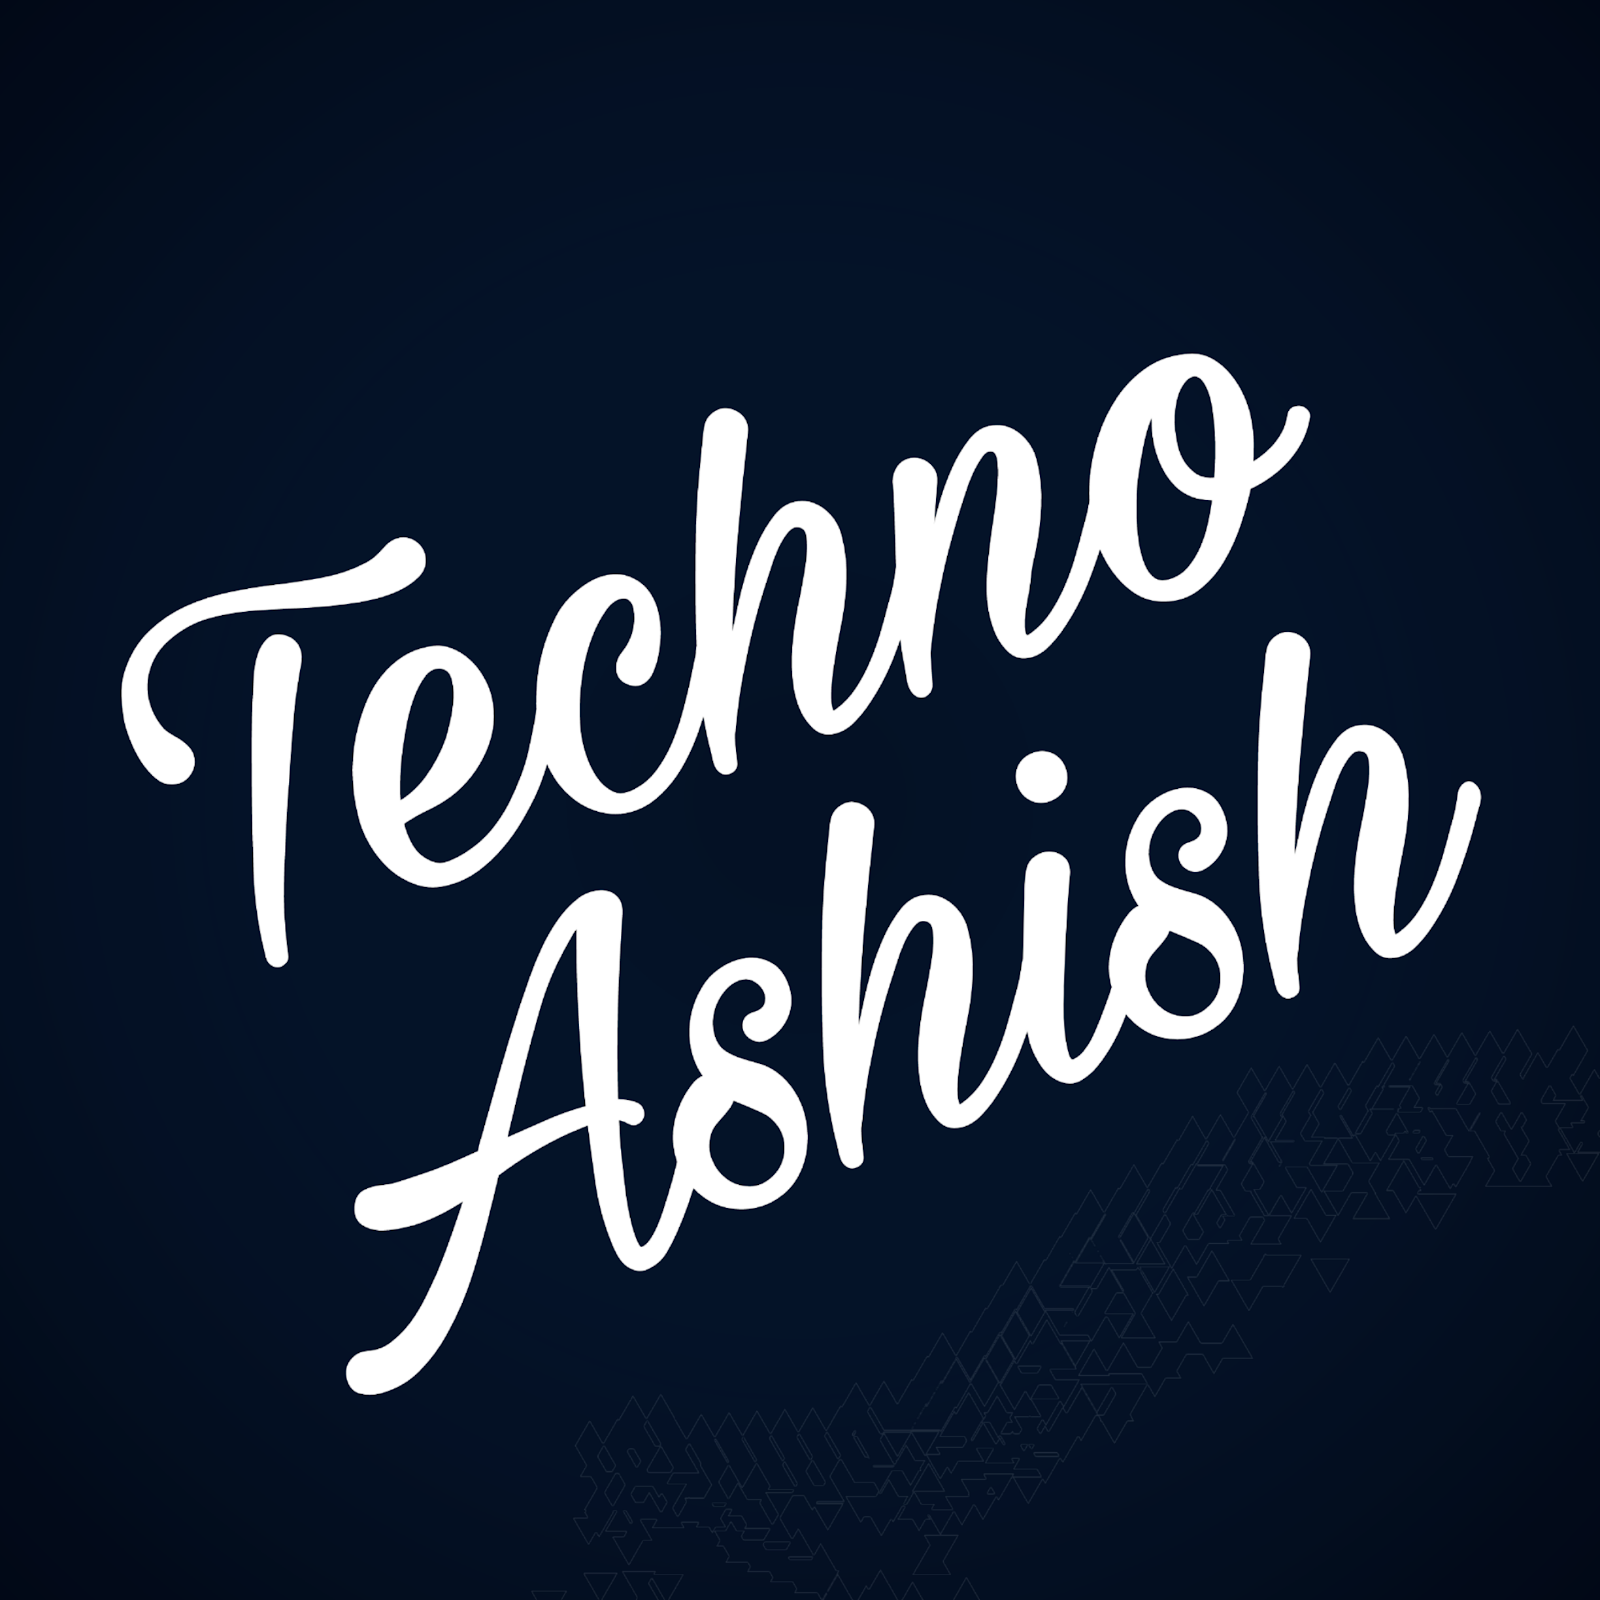 Techno ashish